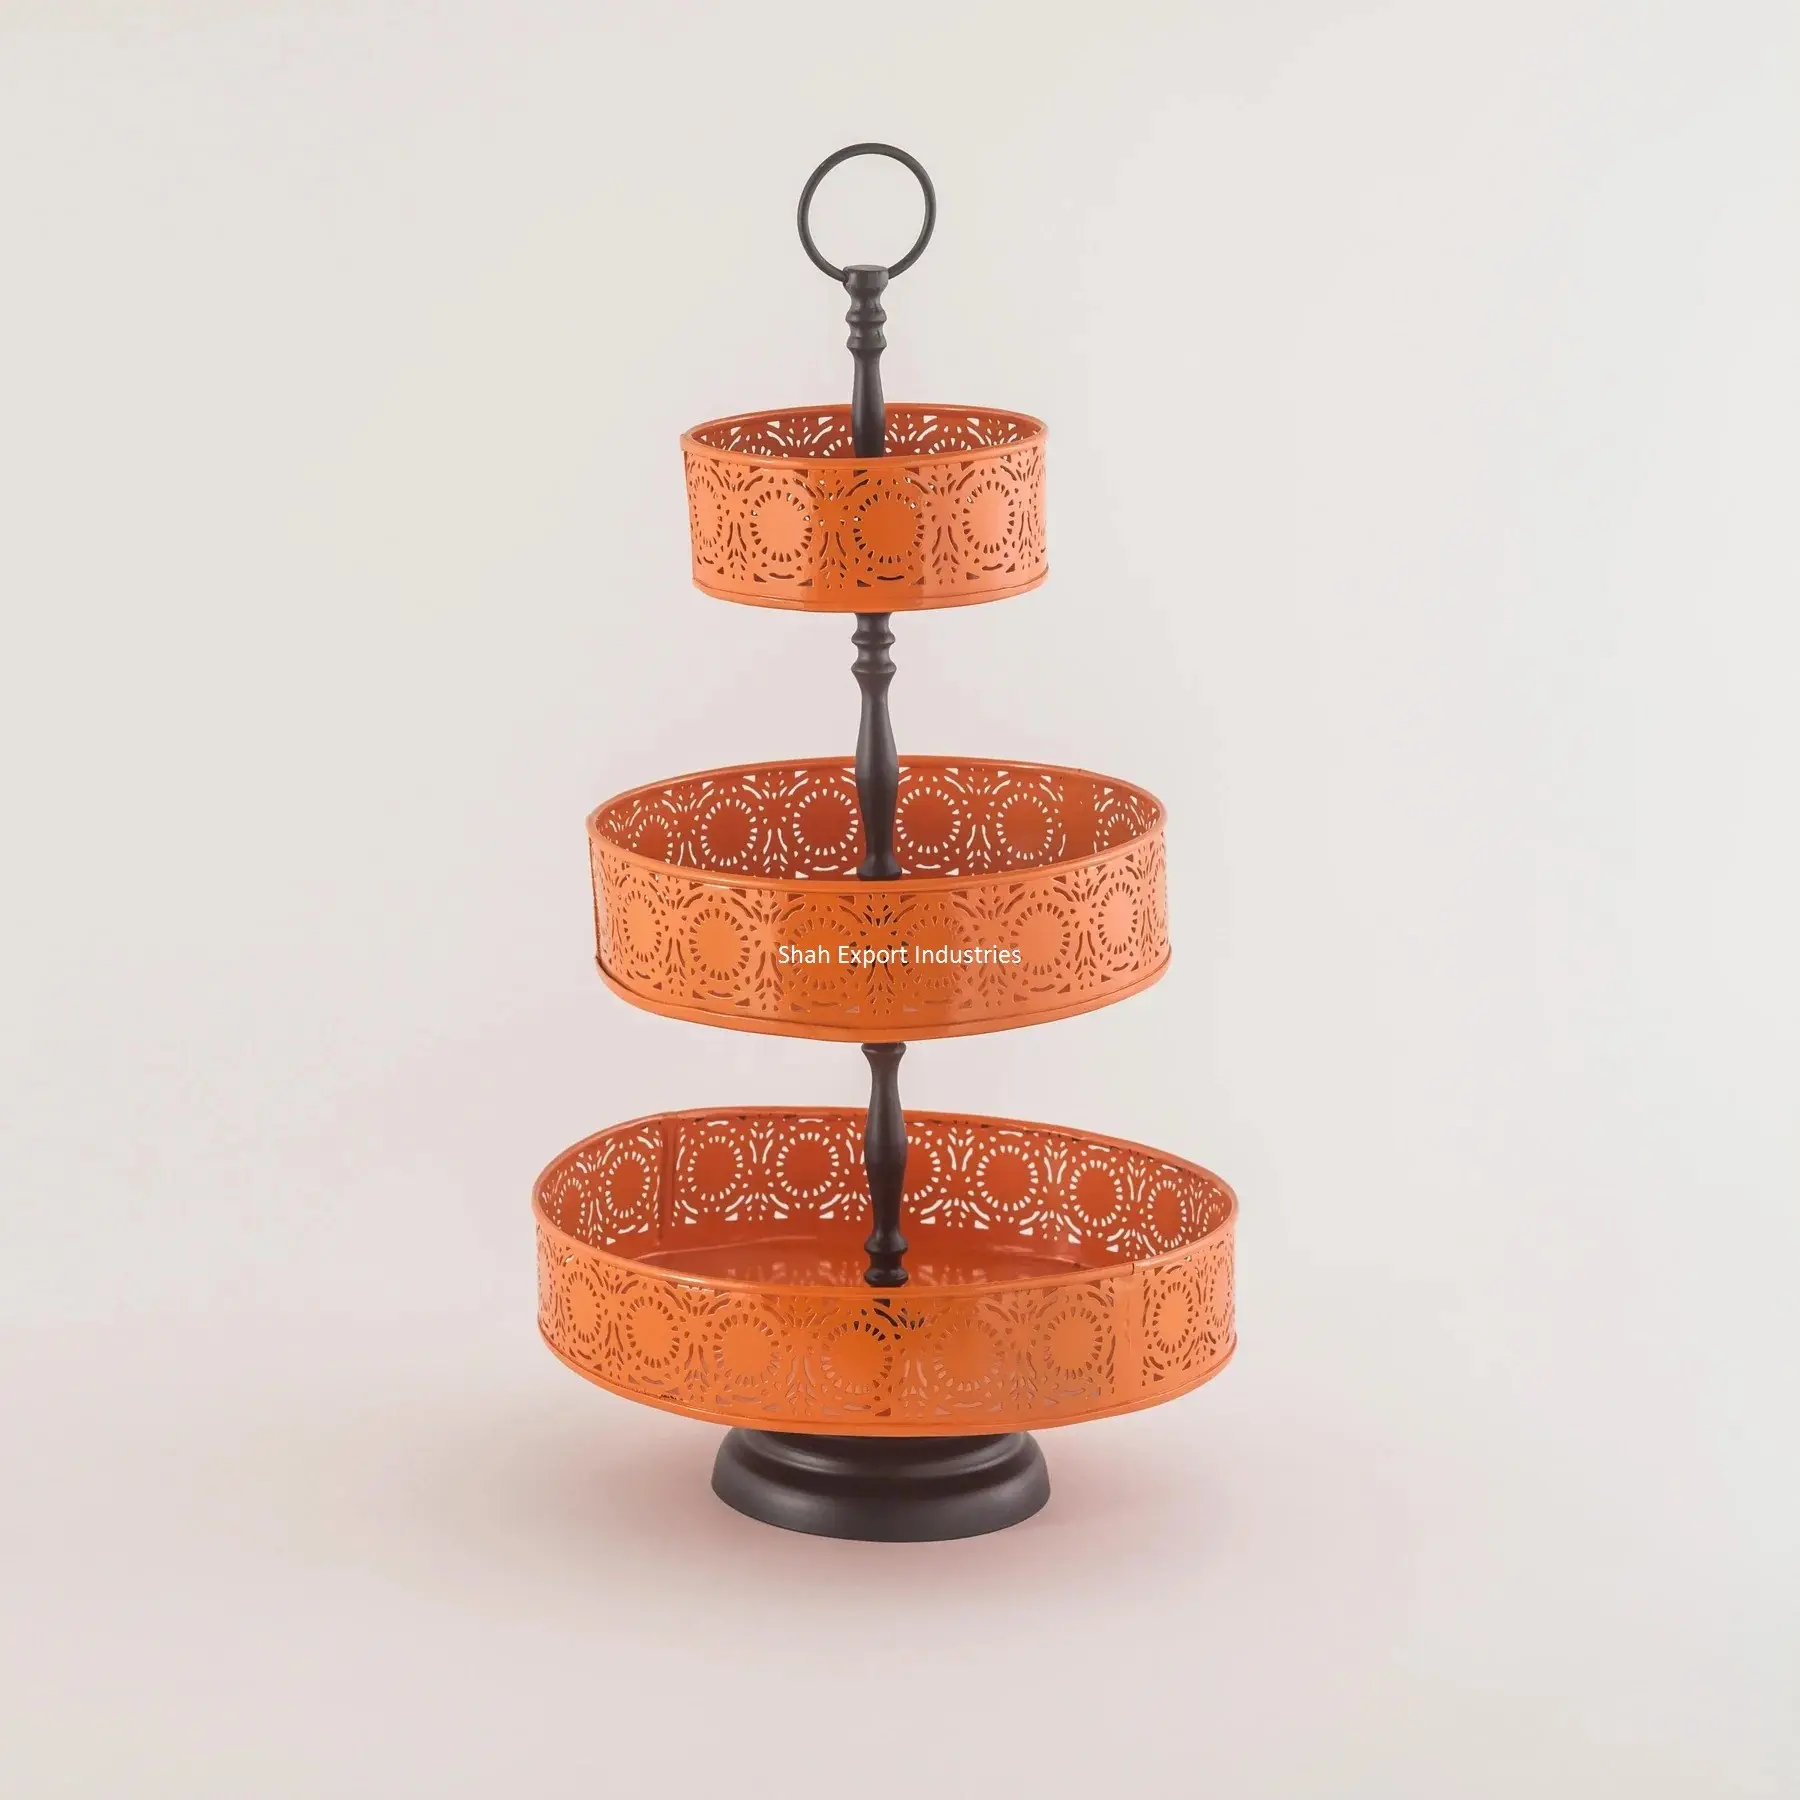 Suporte multiuso de metal com base para decoração de mesa doméstica, 3 camadas, redondo, laranja e preto